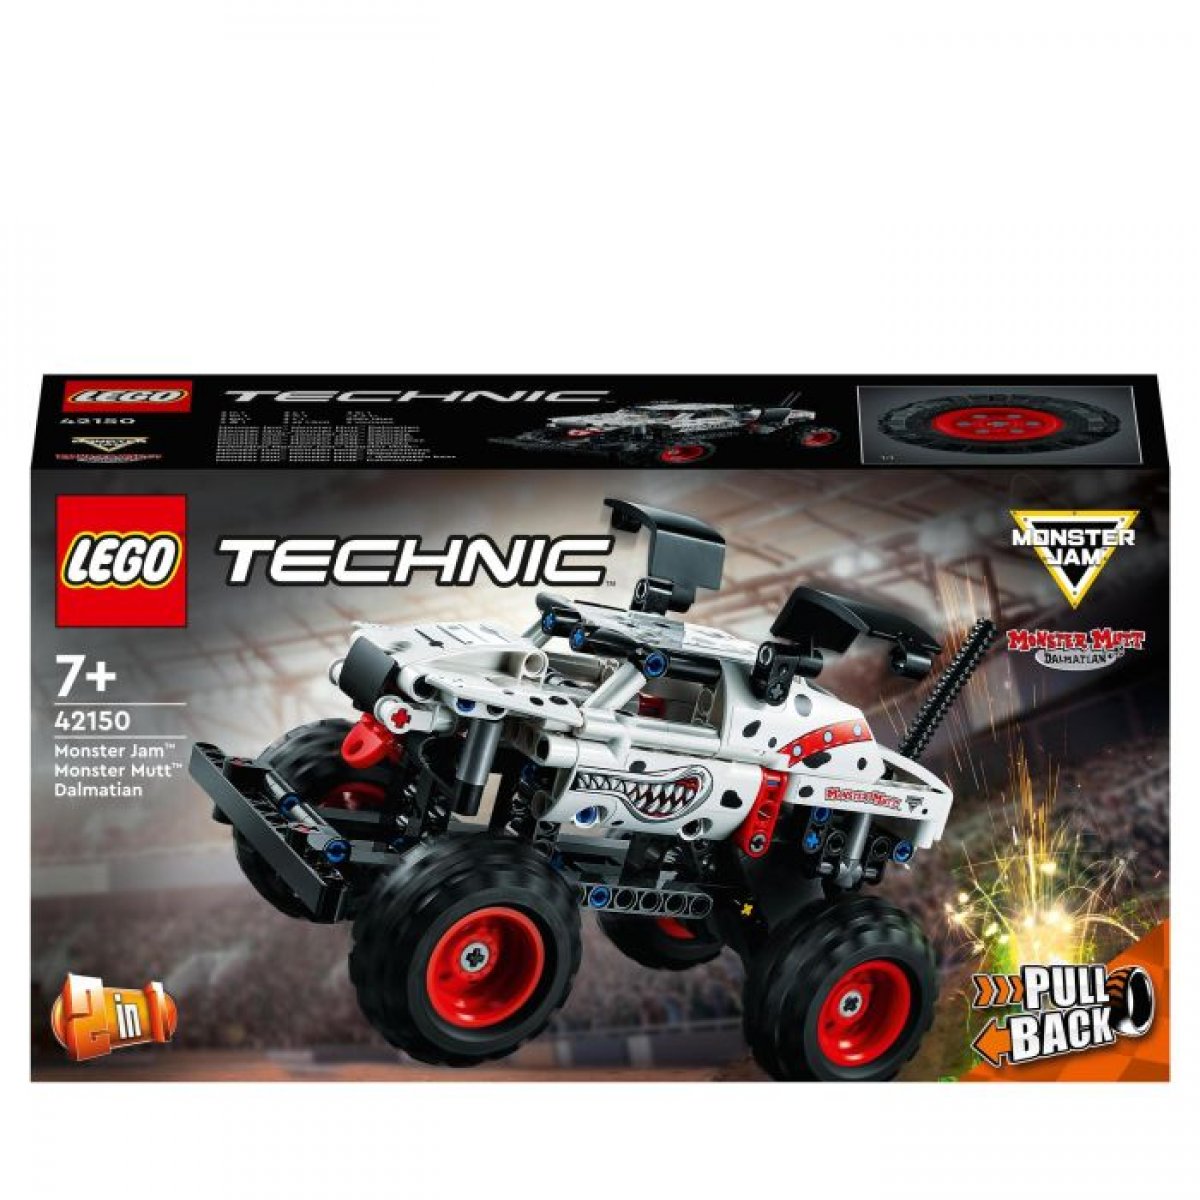 LEGO 42150 - Technic Monster Jam Monster Mutt Dalmatian